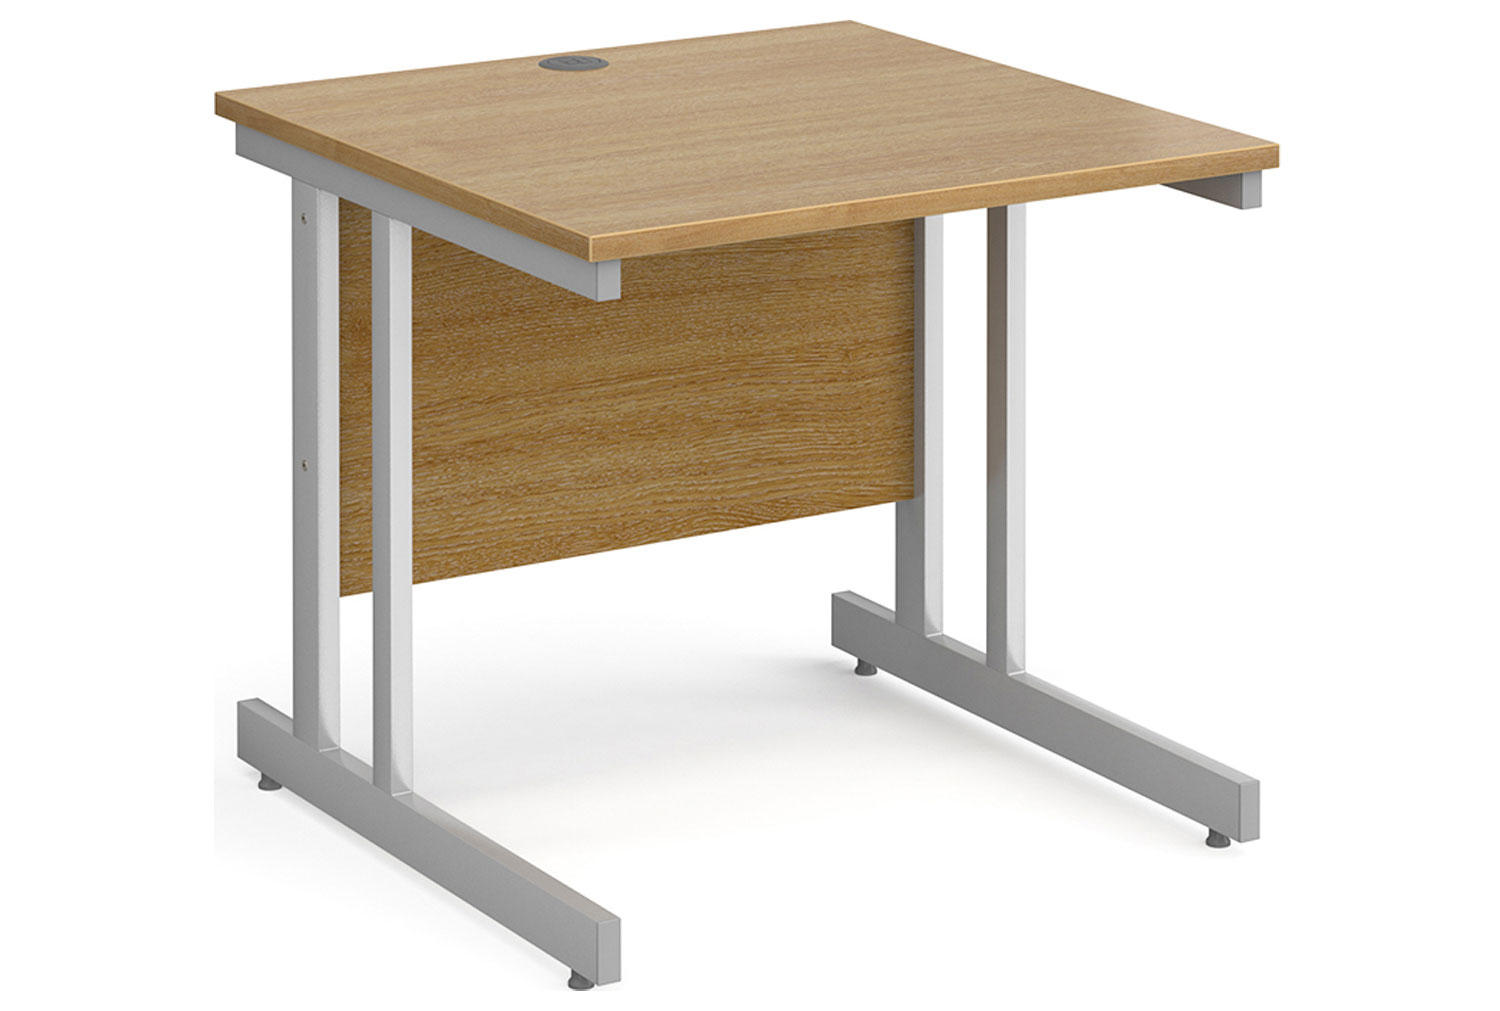 Tully II Rectangular Office Desk, 80wx80dx73h (cm), Oak